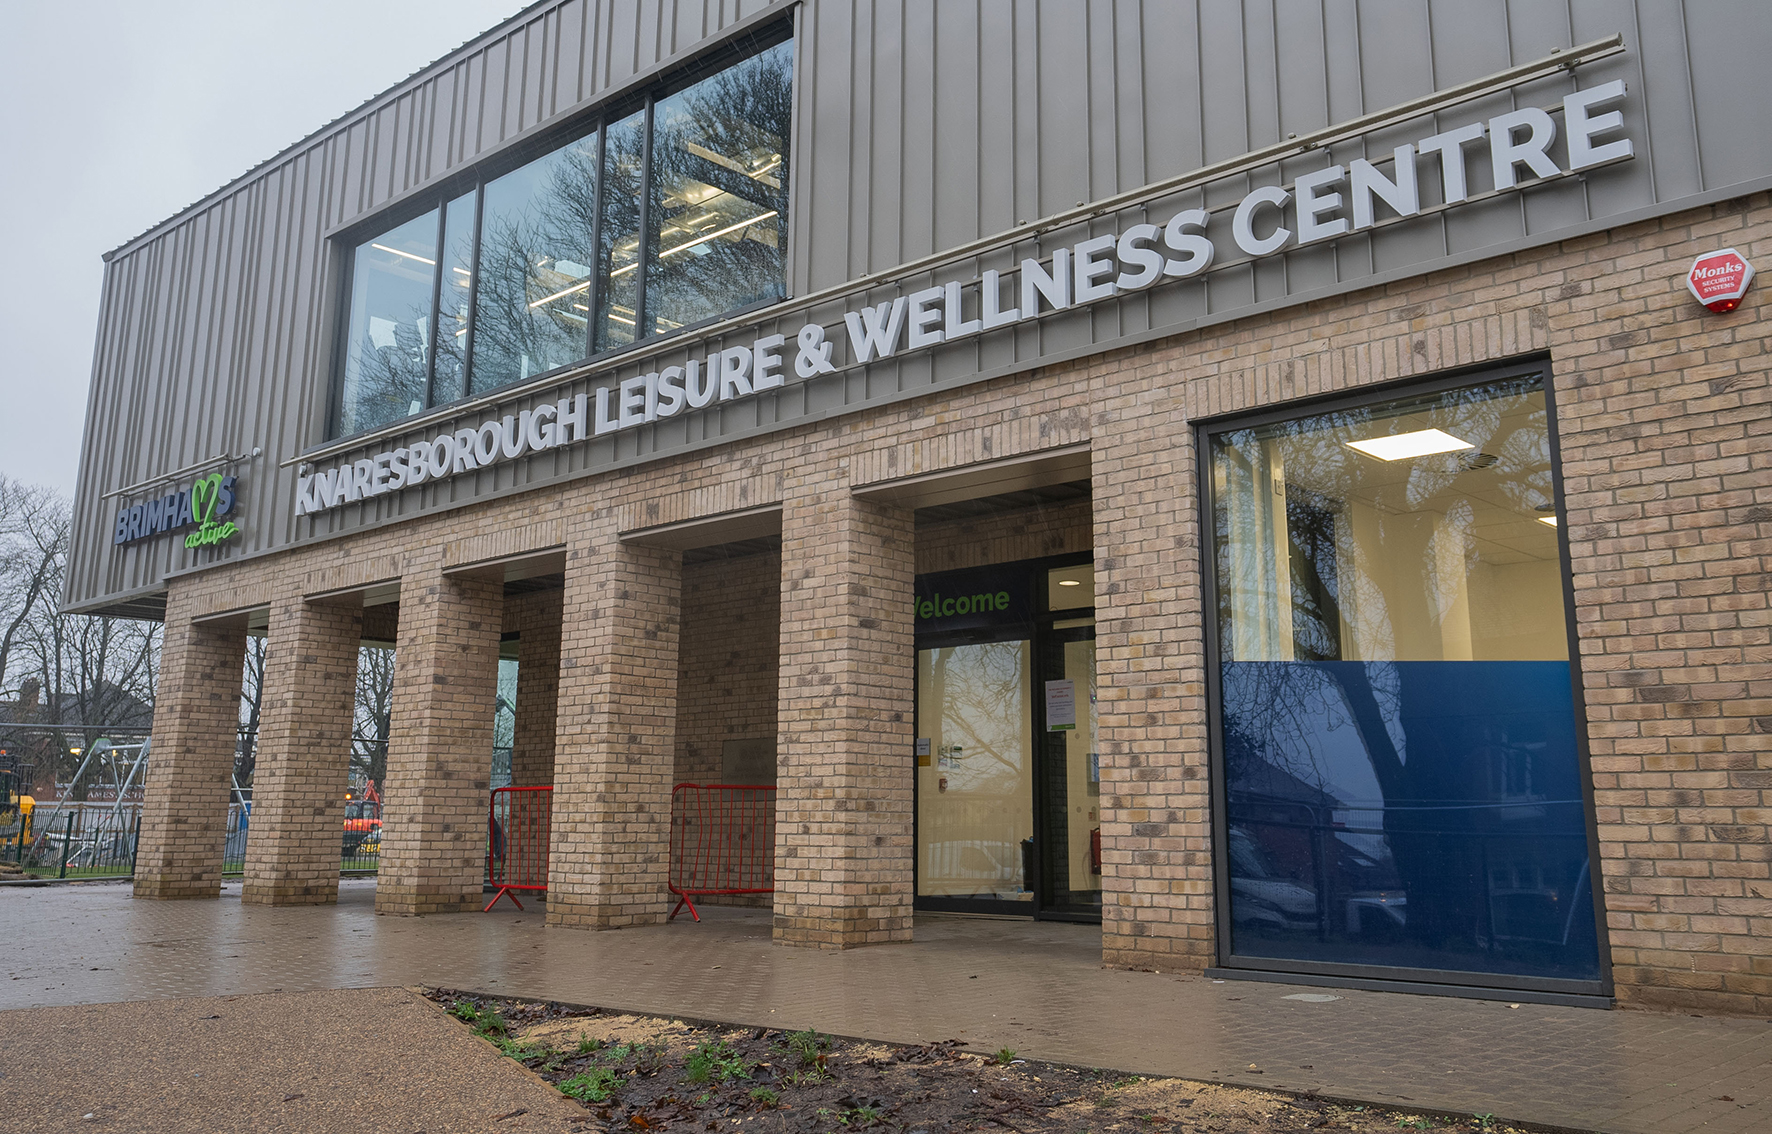 Outside Knaresborough leisure and wellness centre